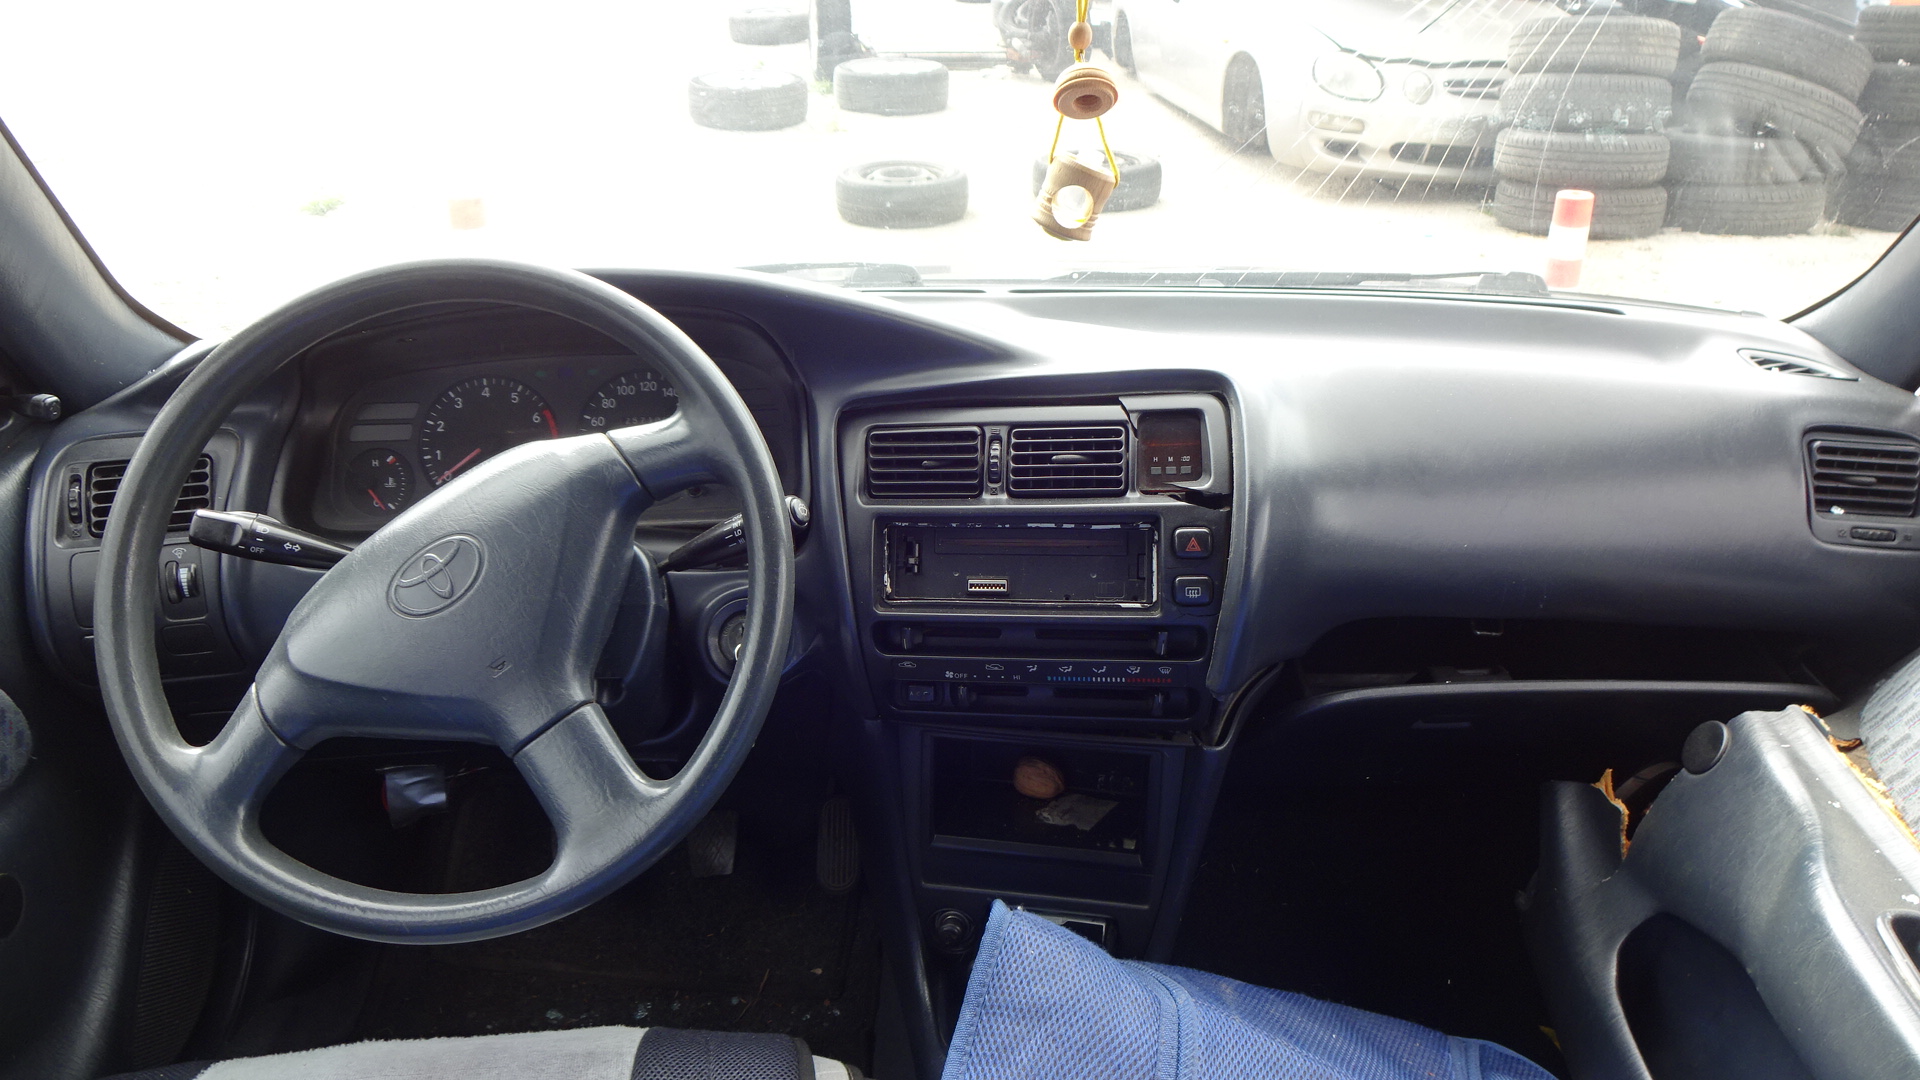 Μοτέρ Καλοριφέρ Toyota Corolla ’97 Προσφορά.